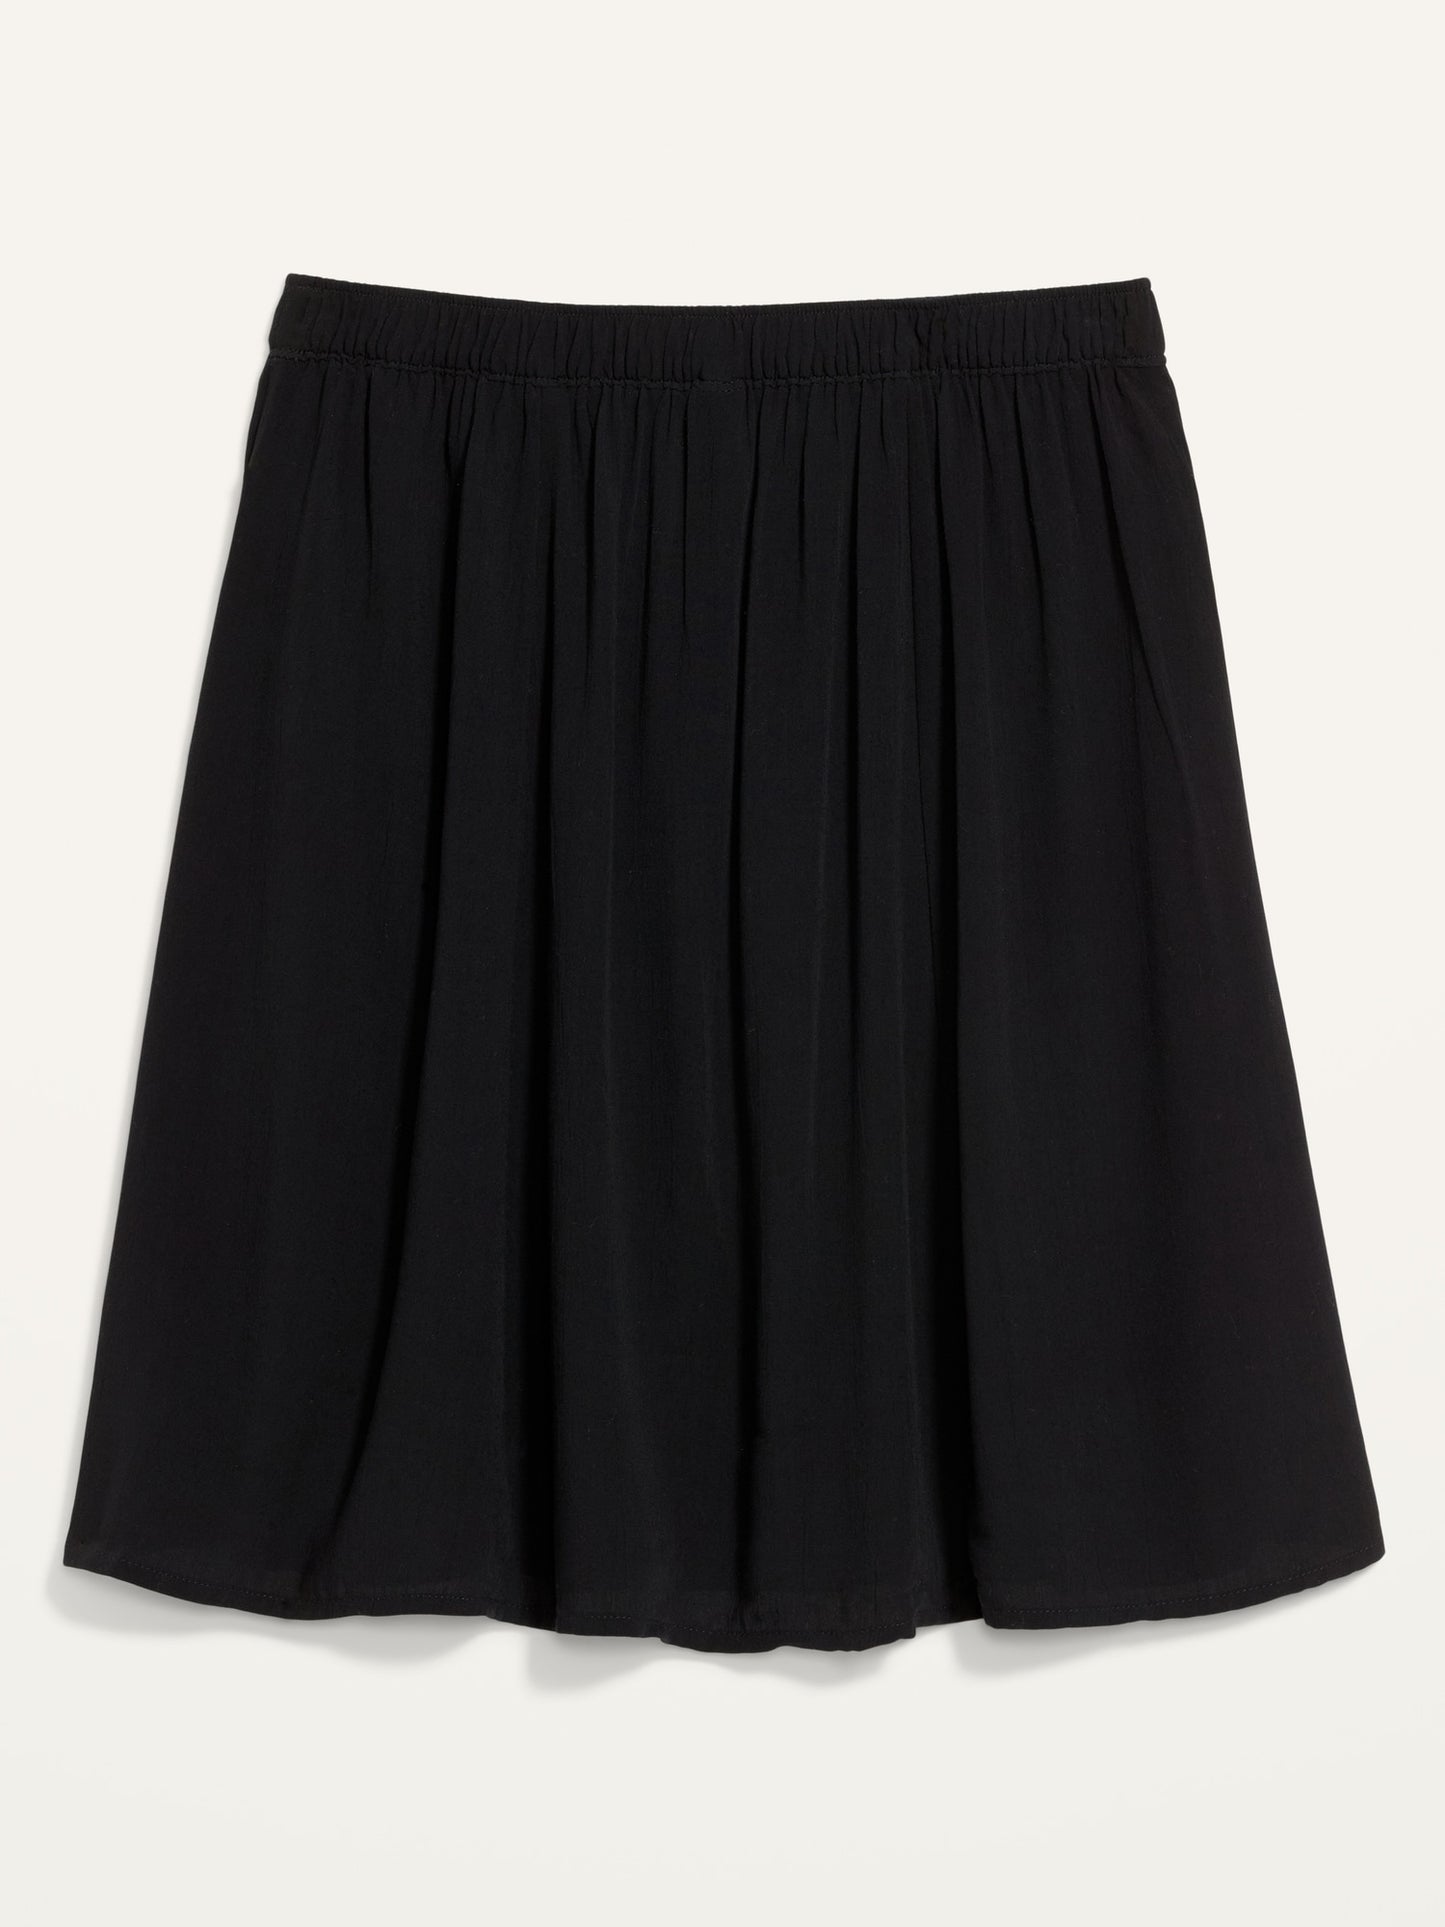 ON Crinkle-Textured Crepe Skirt For Women - Black Jack